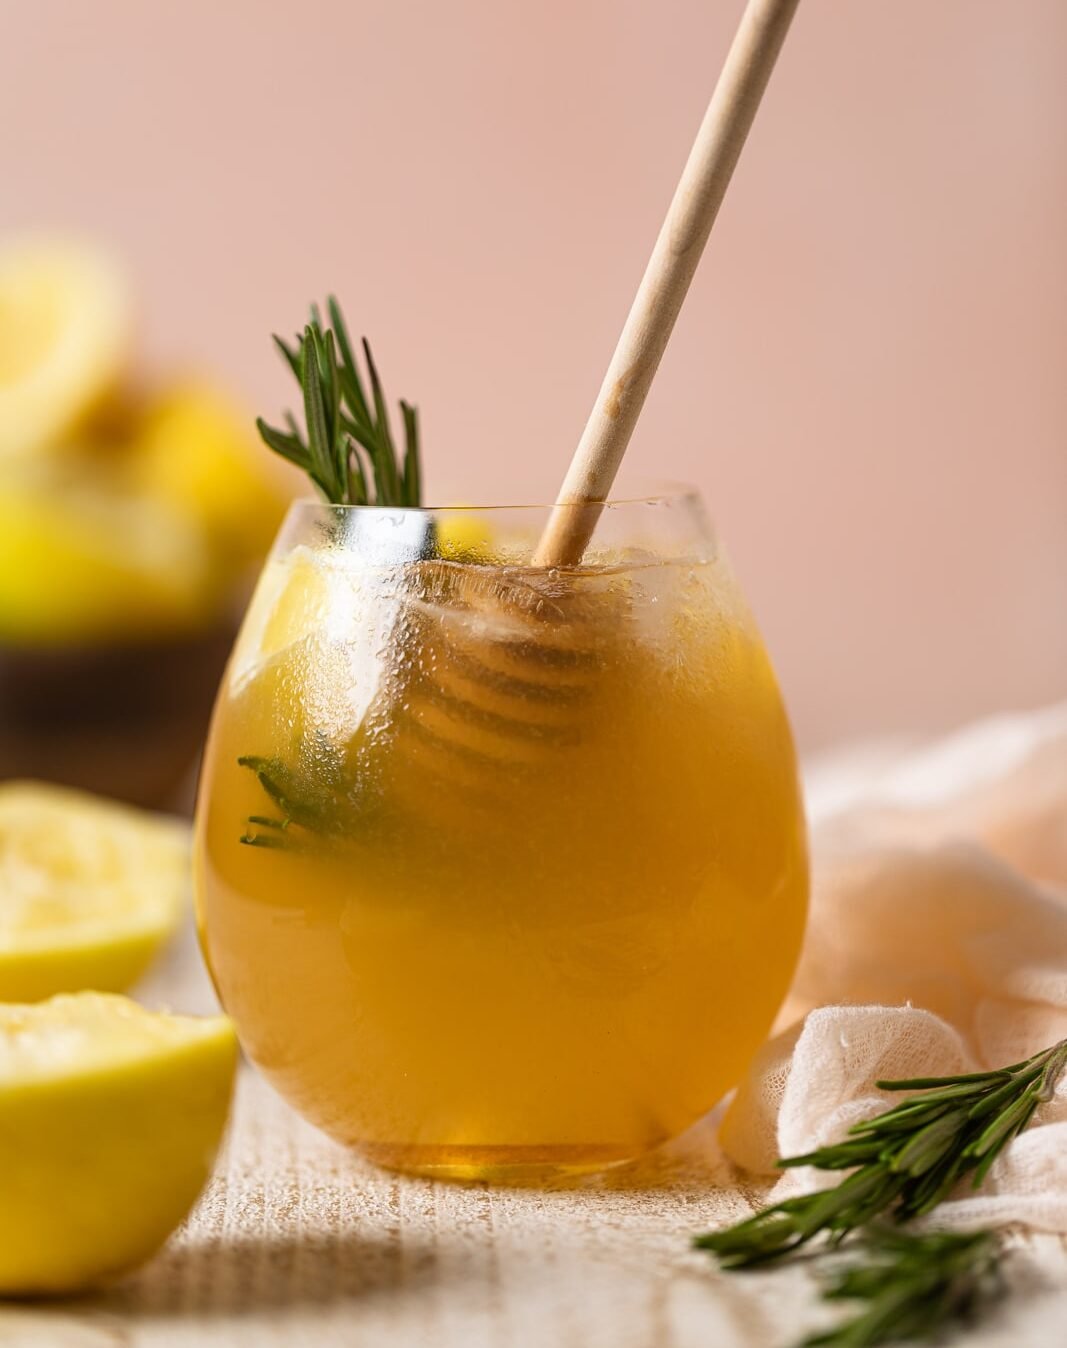 Glass of Apple Cider Vinegar Detox Lemonade with a honey dipper